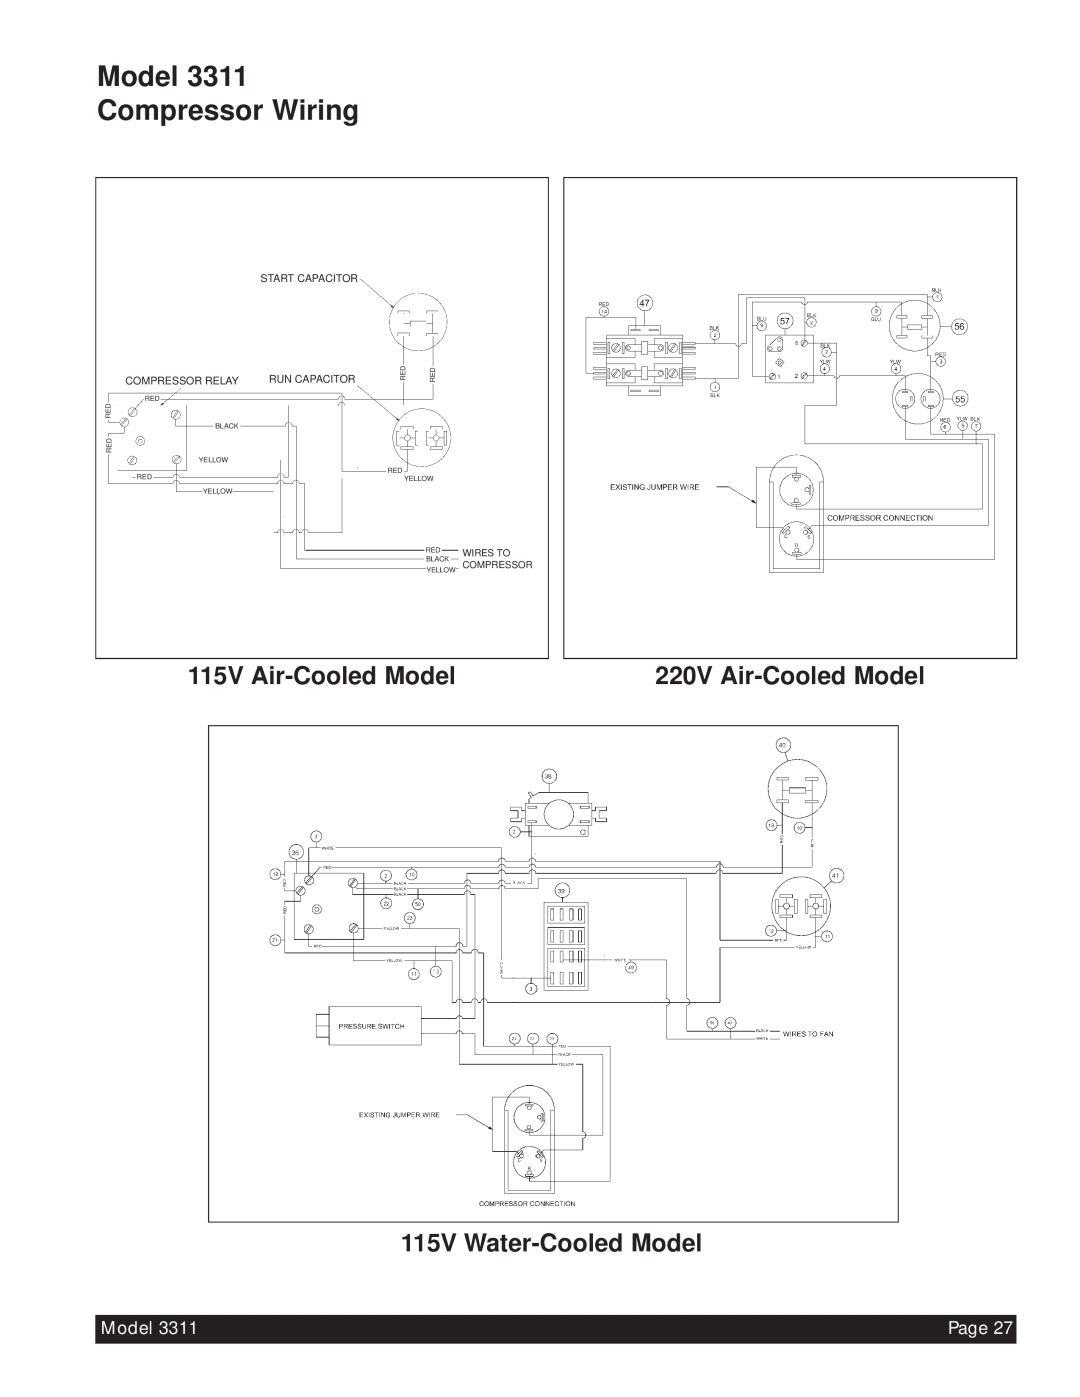 Beverage-Air Model 3311 Compressor Wiring, 115V Air-CooledModel, 115V Water-CooledModel, 220V Air-CooledModel, Page 